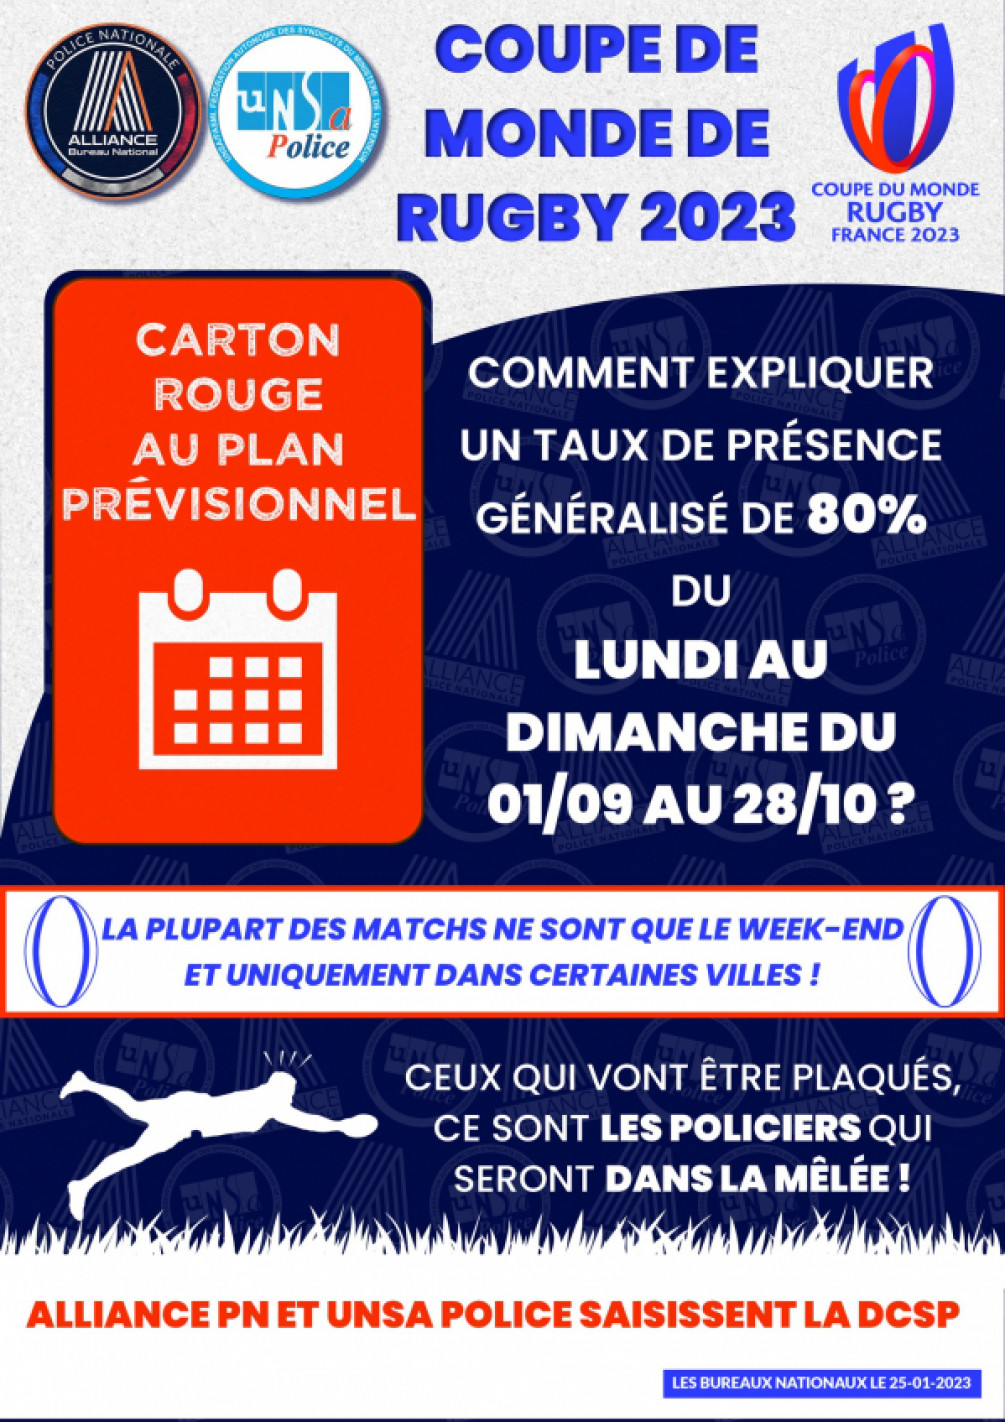 Coupe du monde de rugby 2023 : Taux de présence 